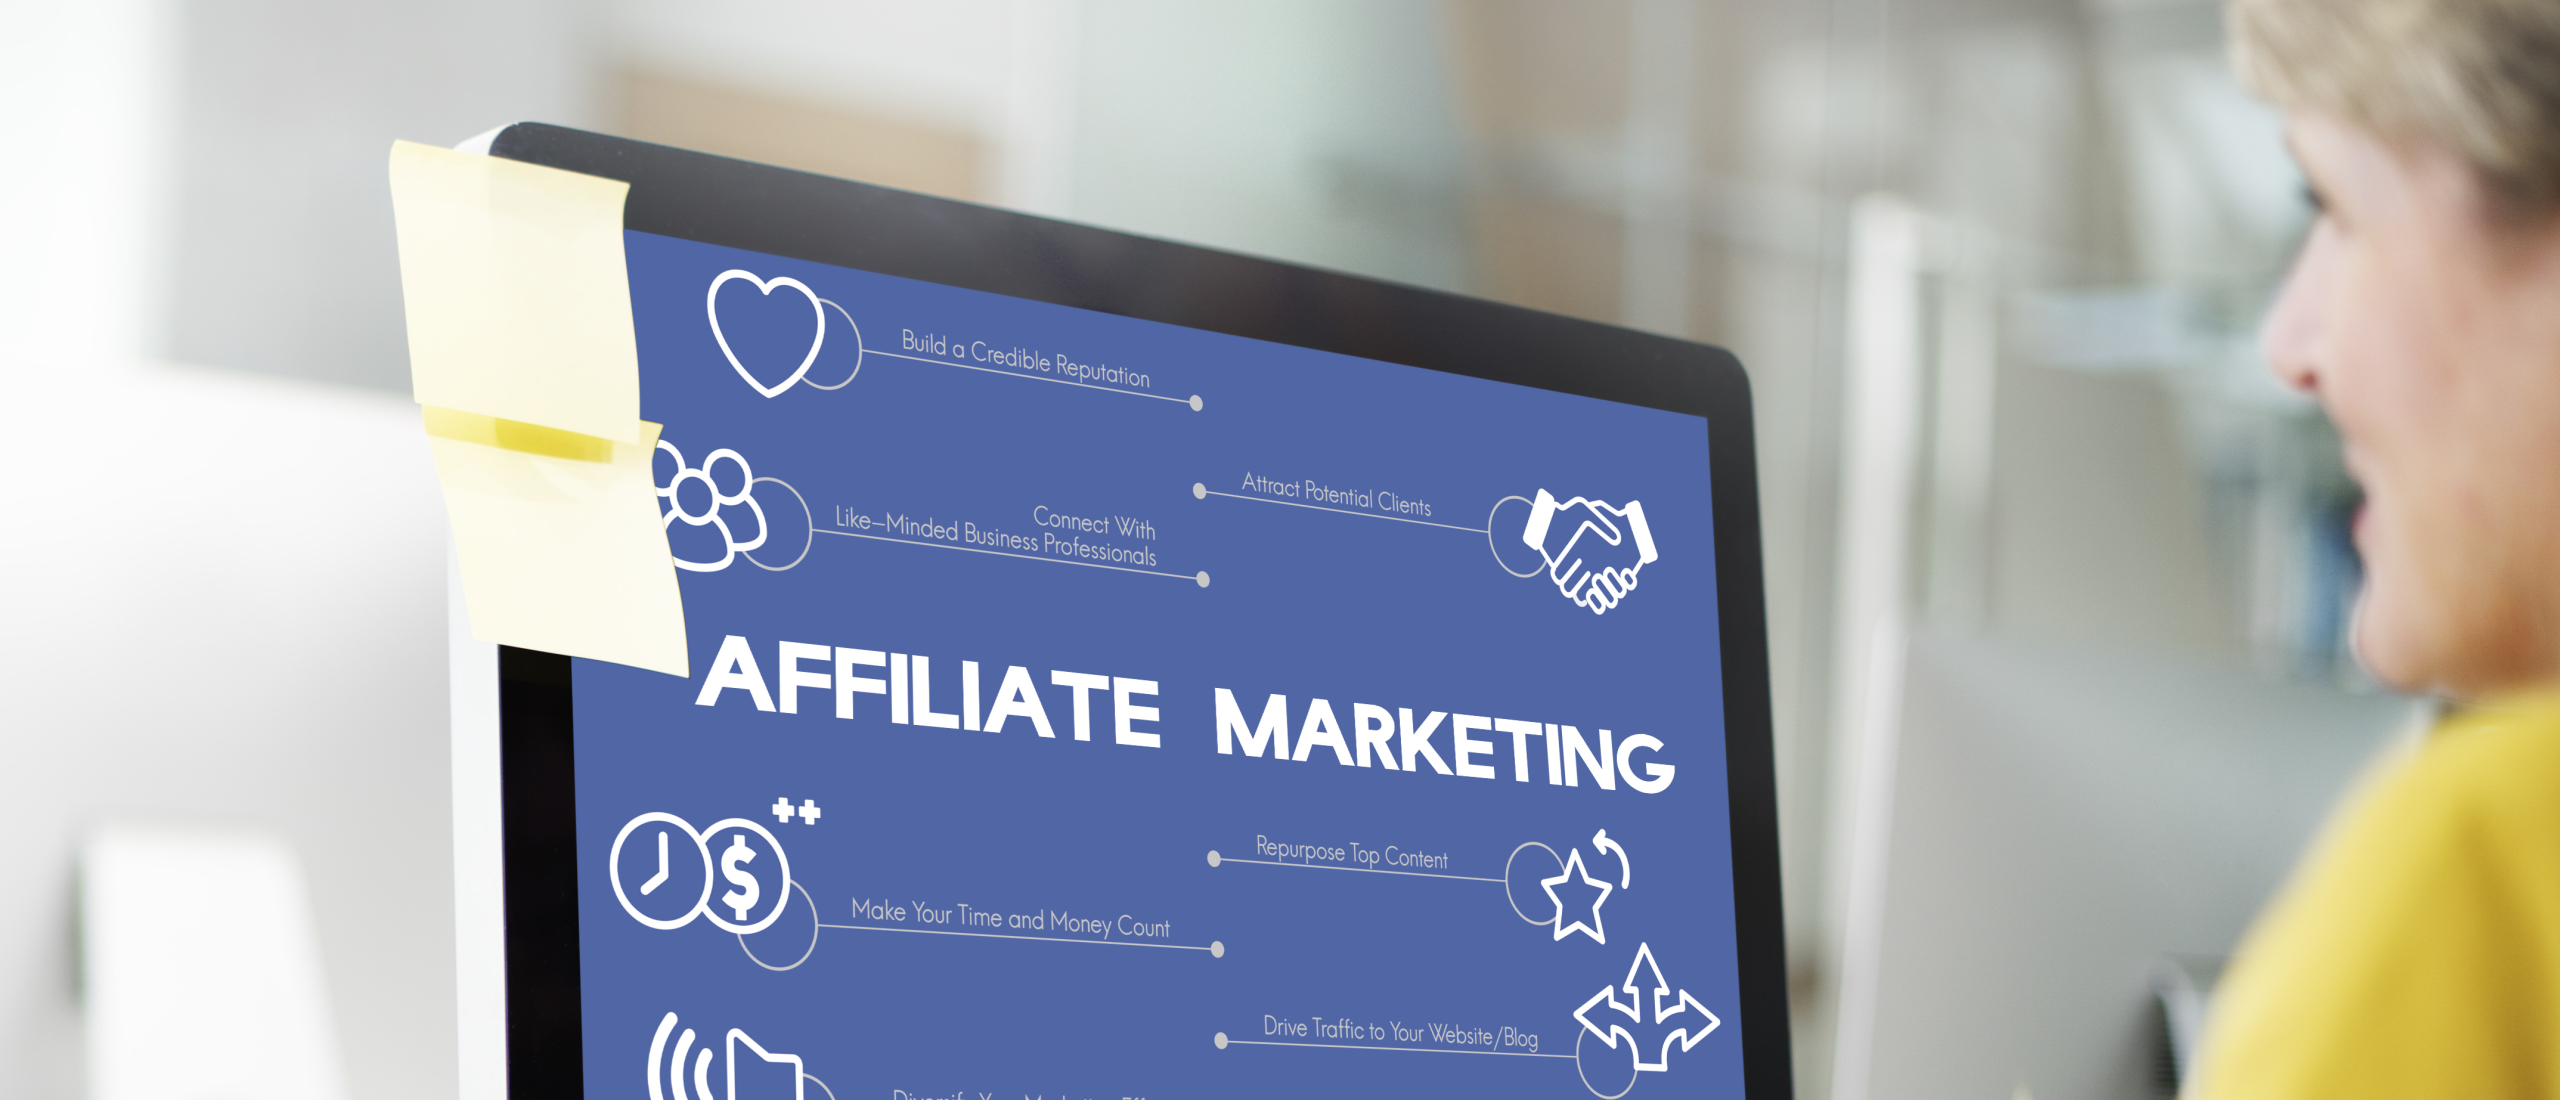 Hoe werkt affiliate marketing?